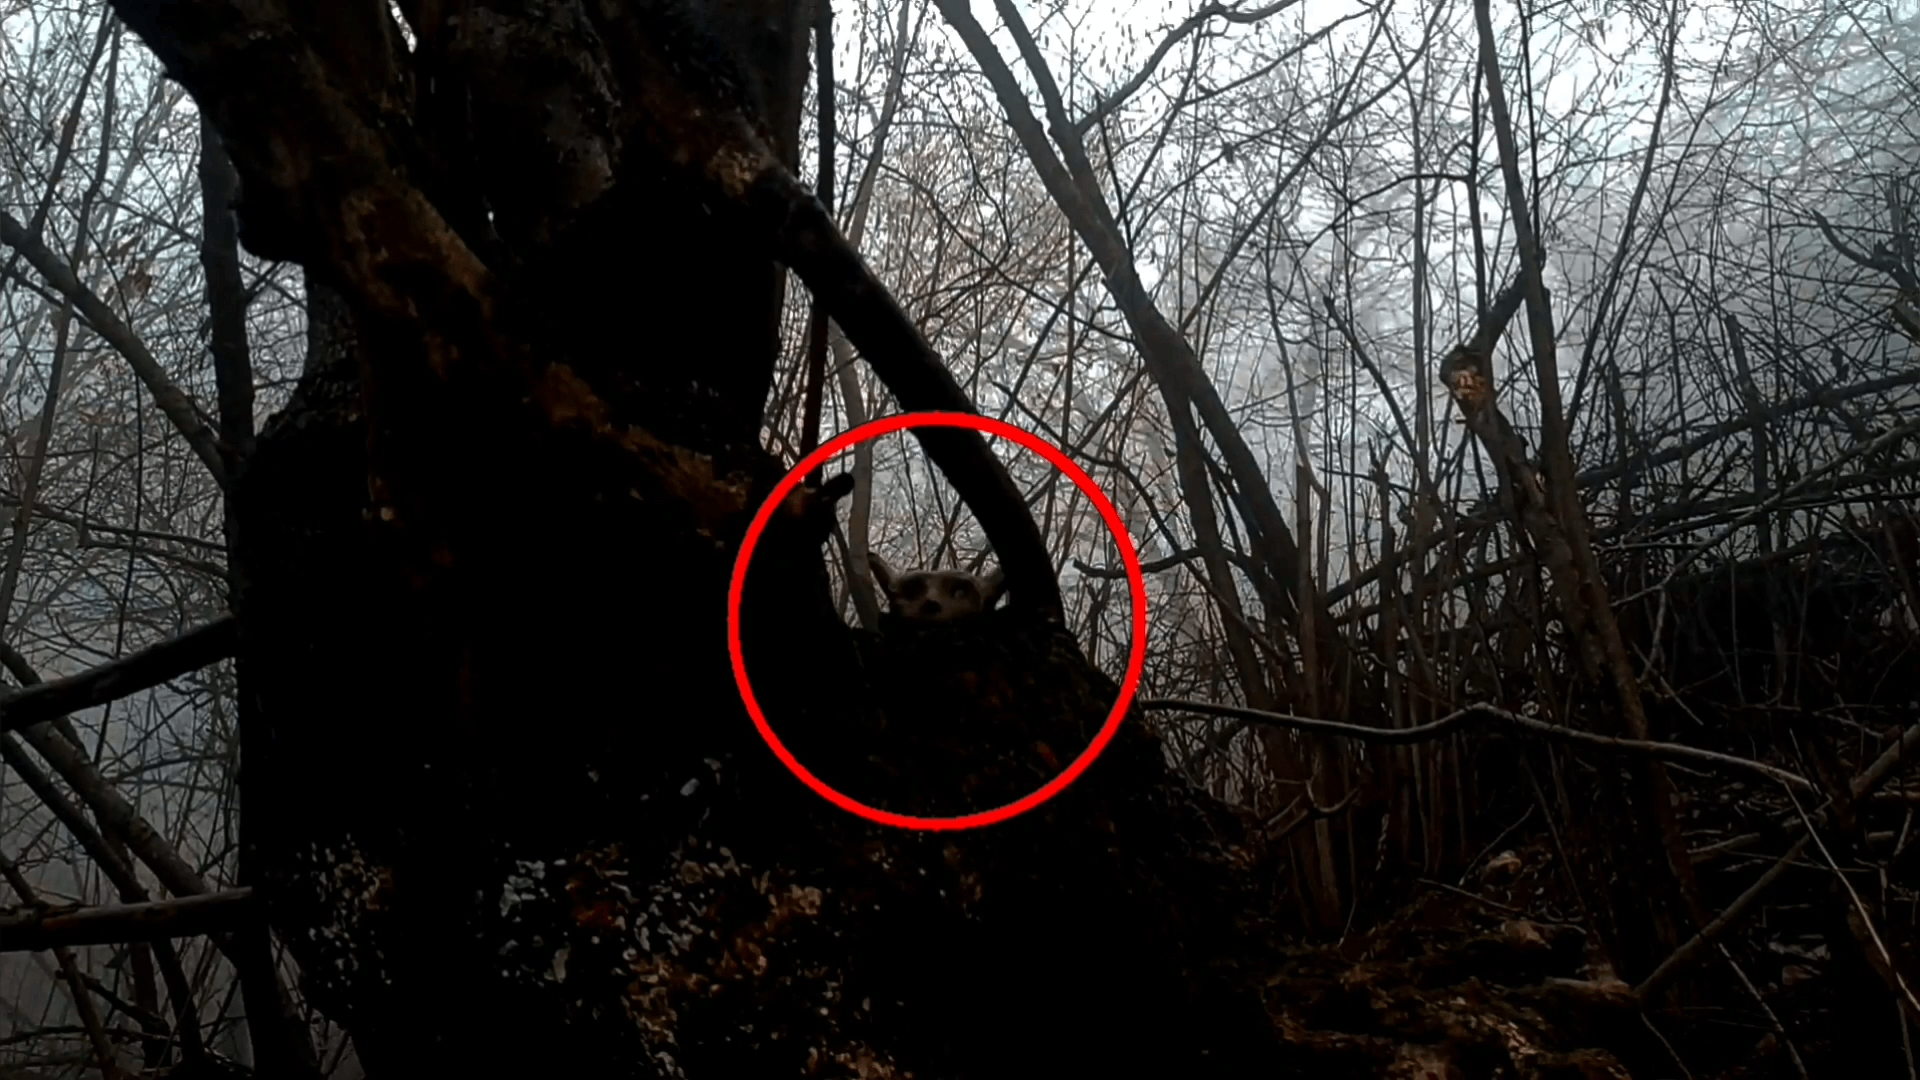 Страшный демон в лесу напугал туристов | Жуткие видео реальные